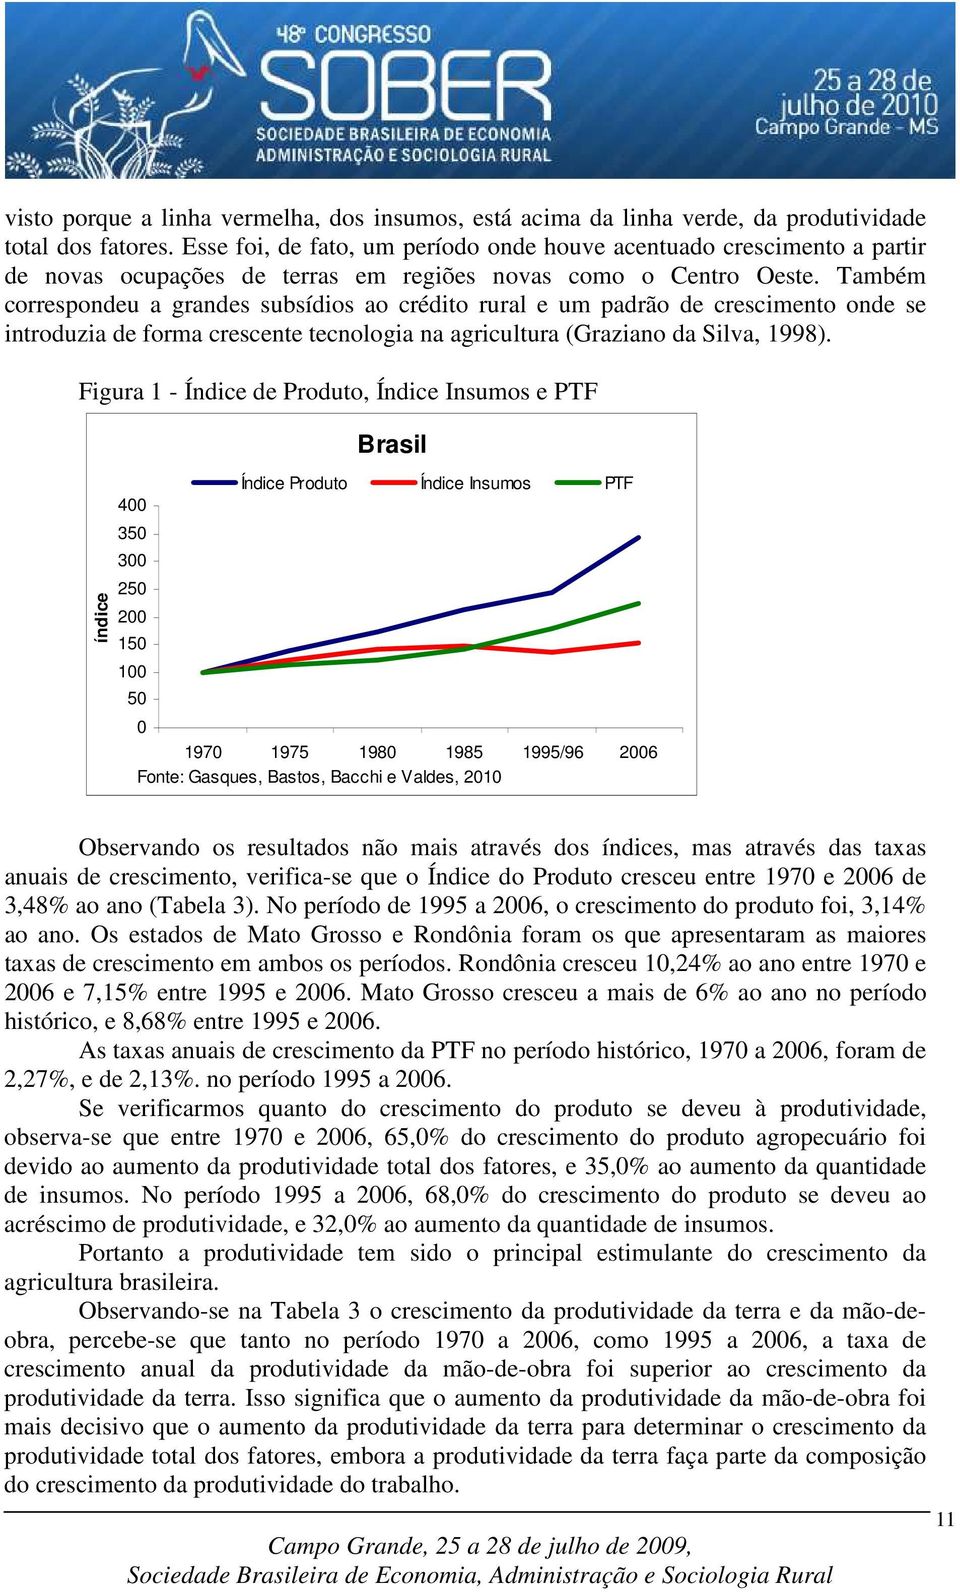 Também correspondeu a grandes subsídios ao crédito rural e um padrão de crescimento onde se introduzia de forma crescente tecnologia na agricultura (Graziano da Silva, 1998).